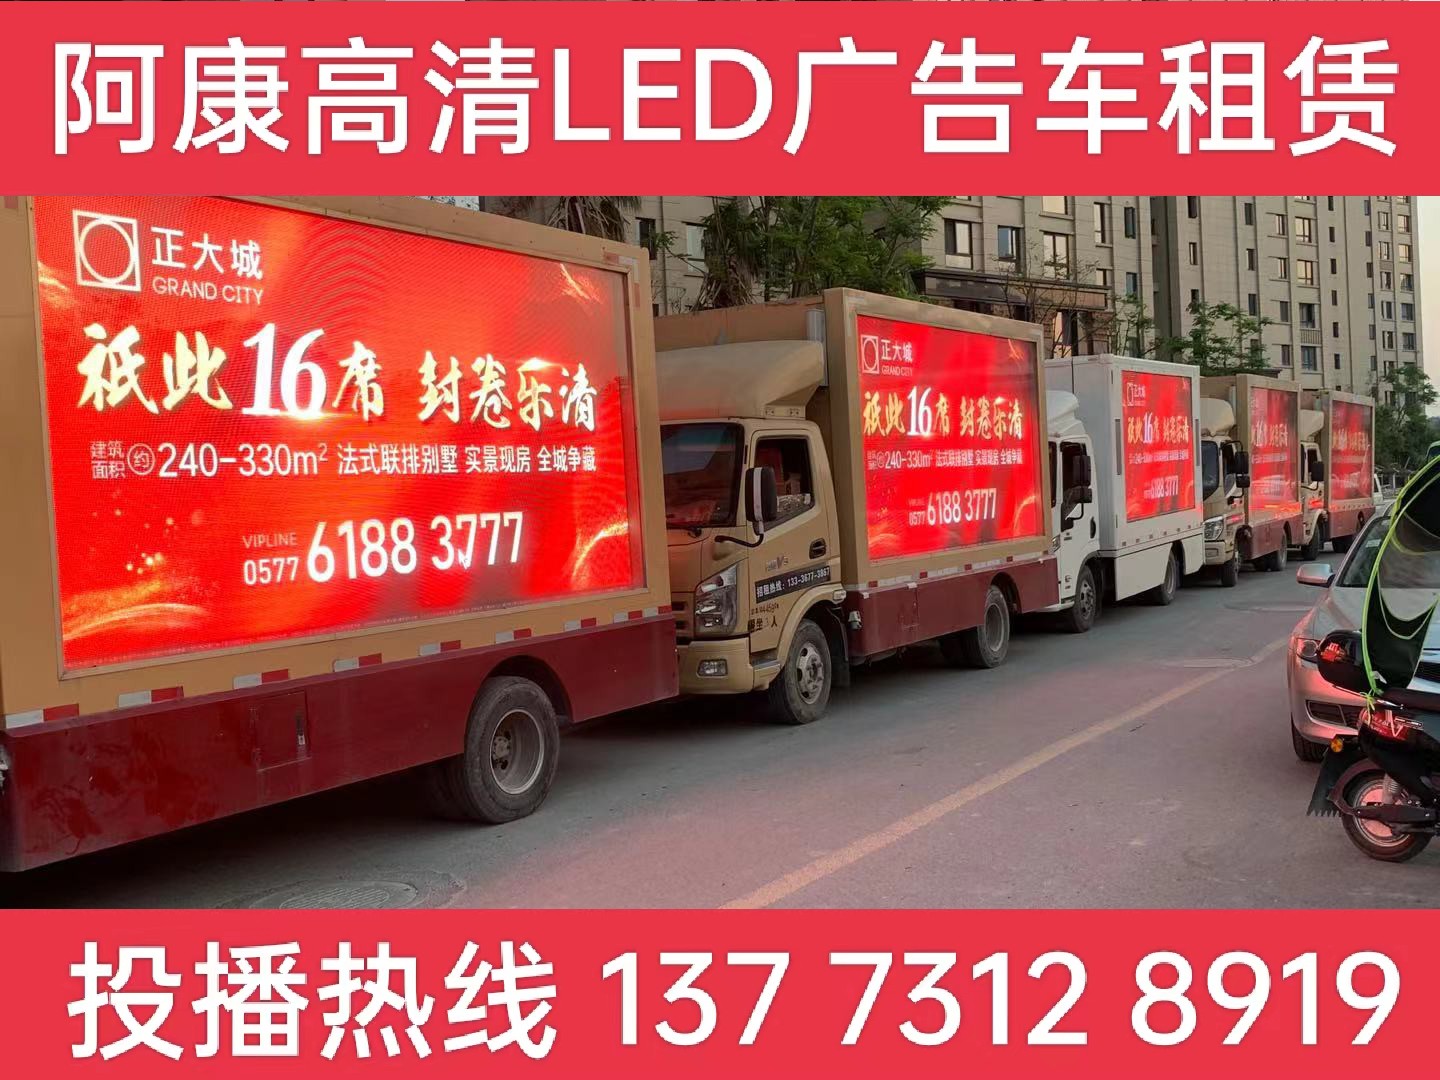 常州LED广告车出租